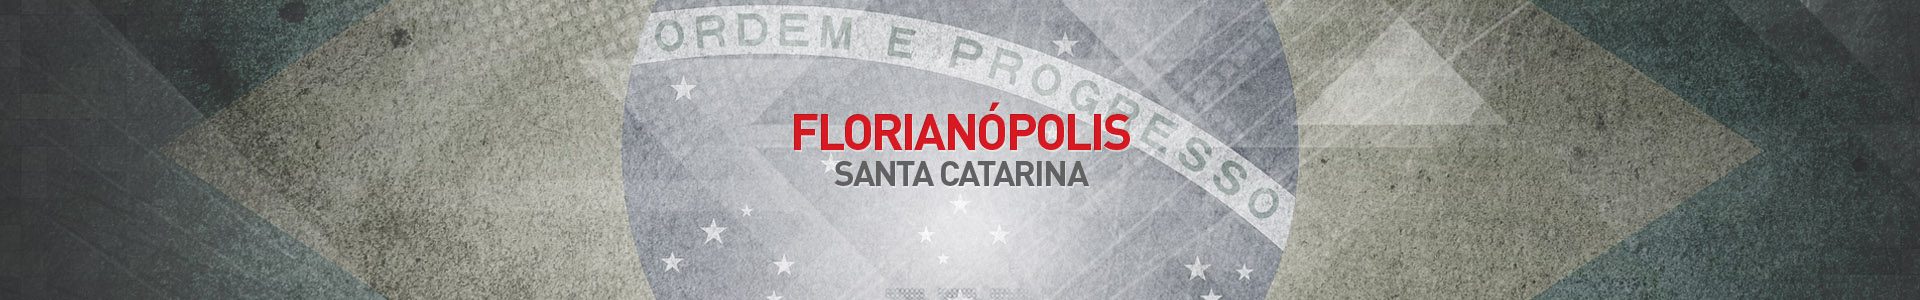 Topo-Cidades-Florianopolis-SBA